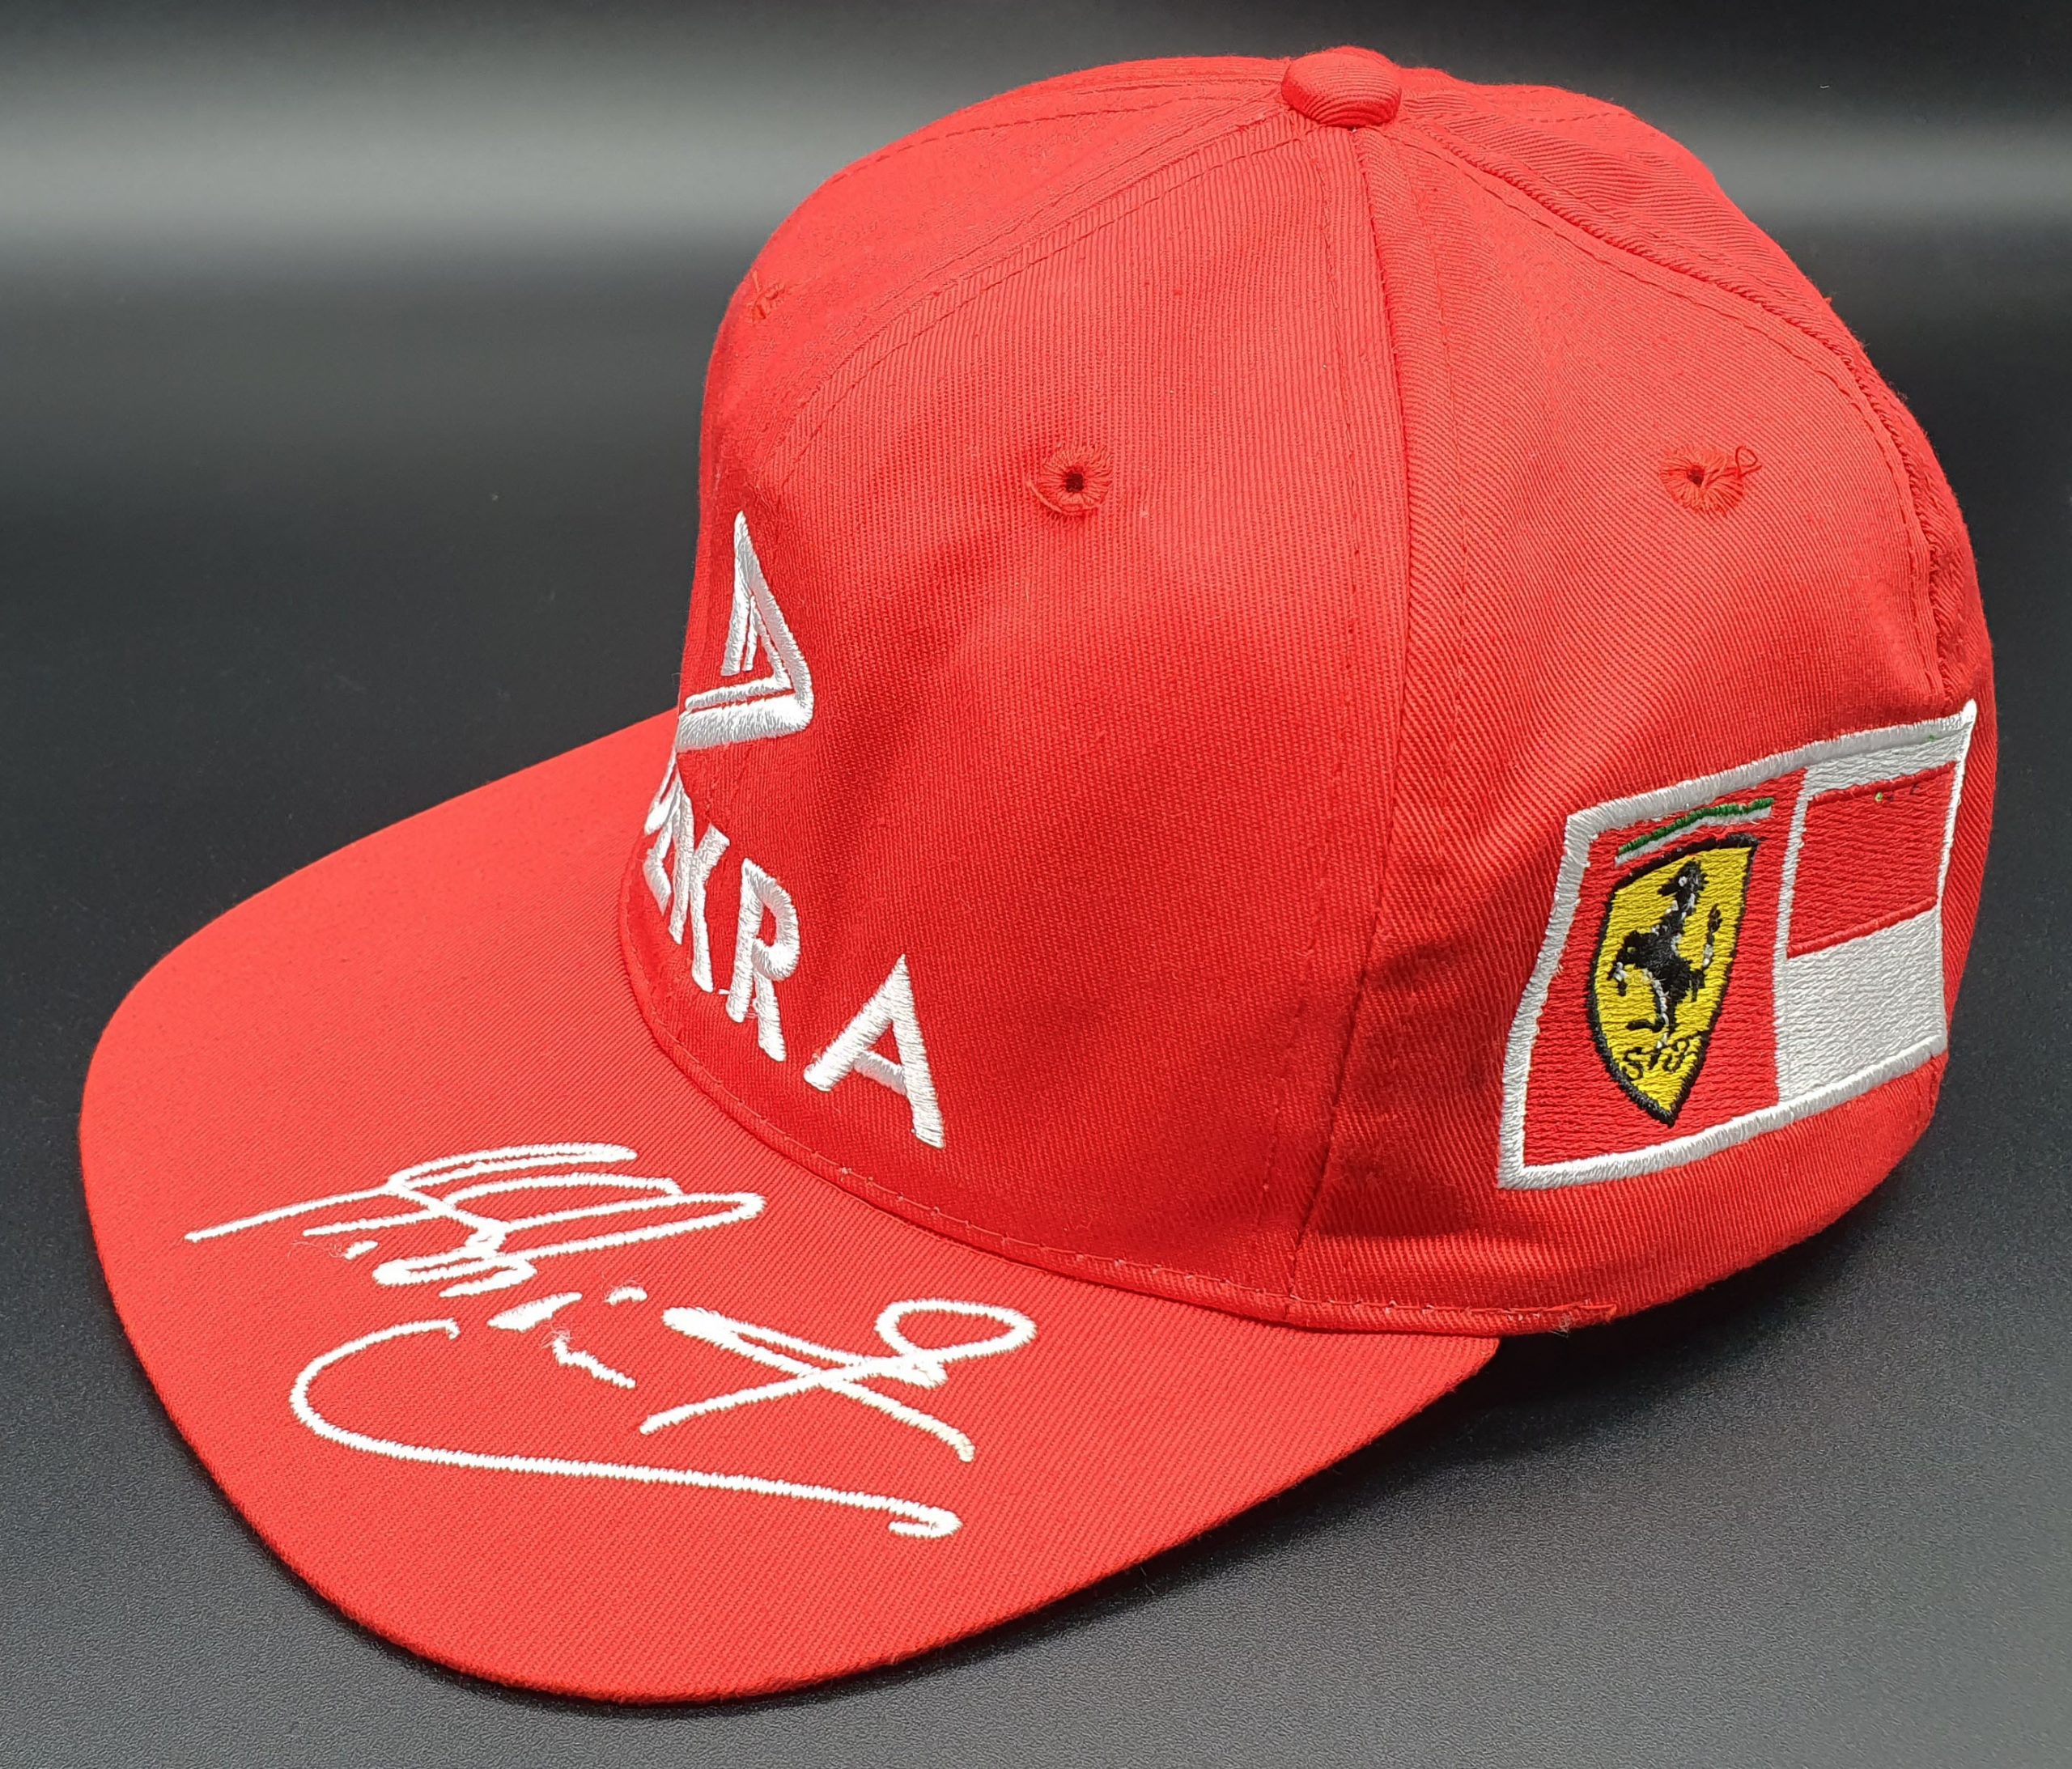 Ferrari cappellino Schumacher 1997 Dekra